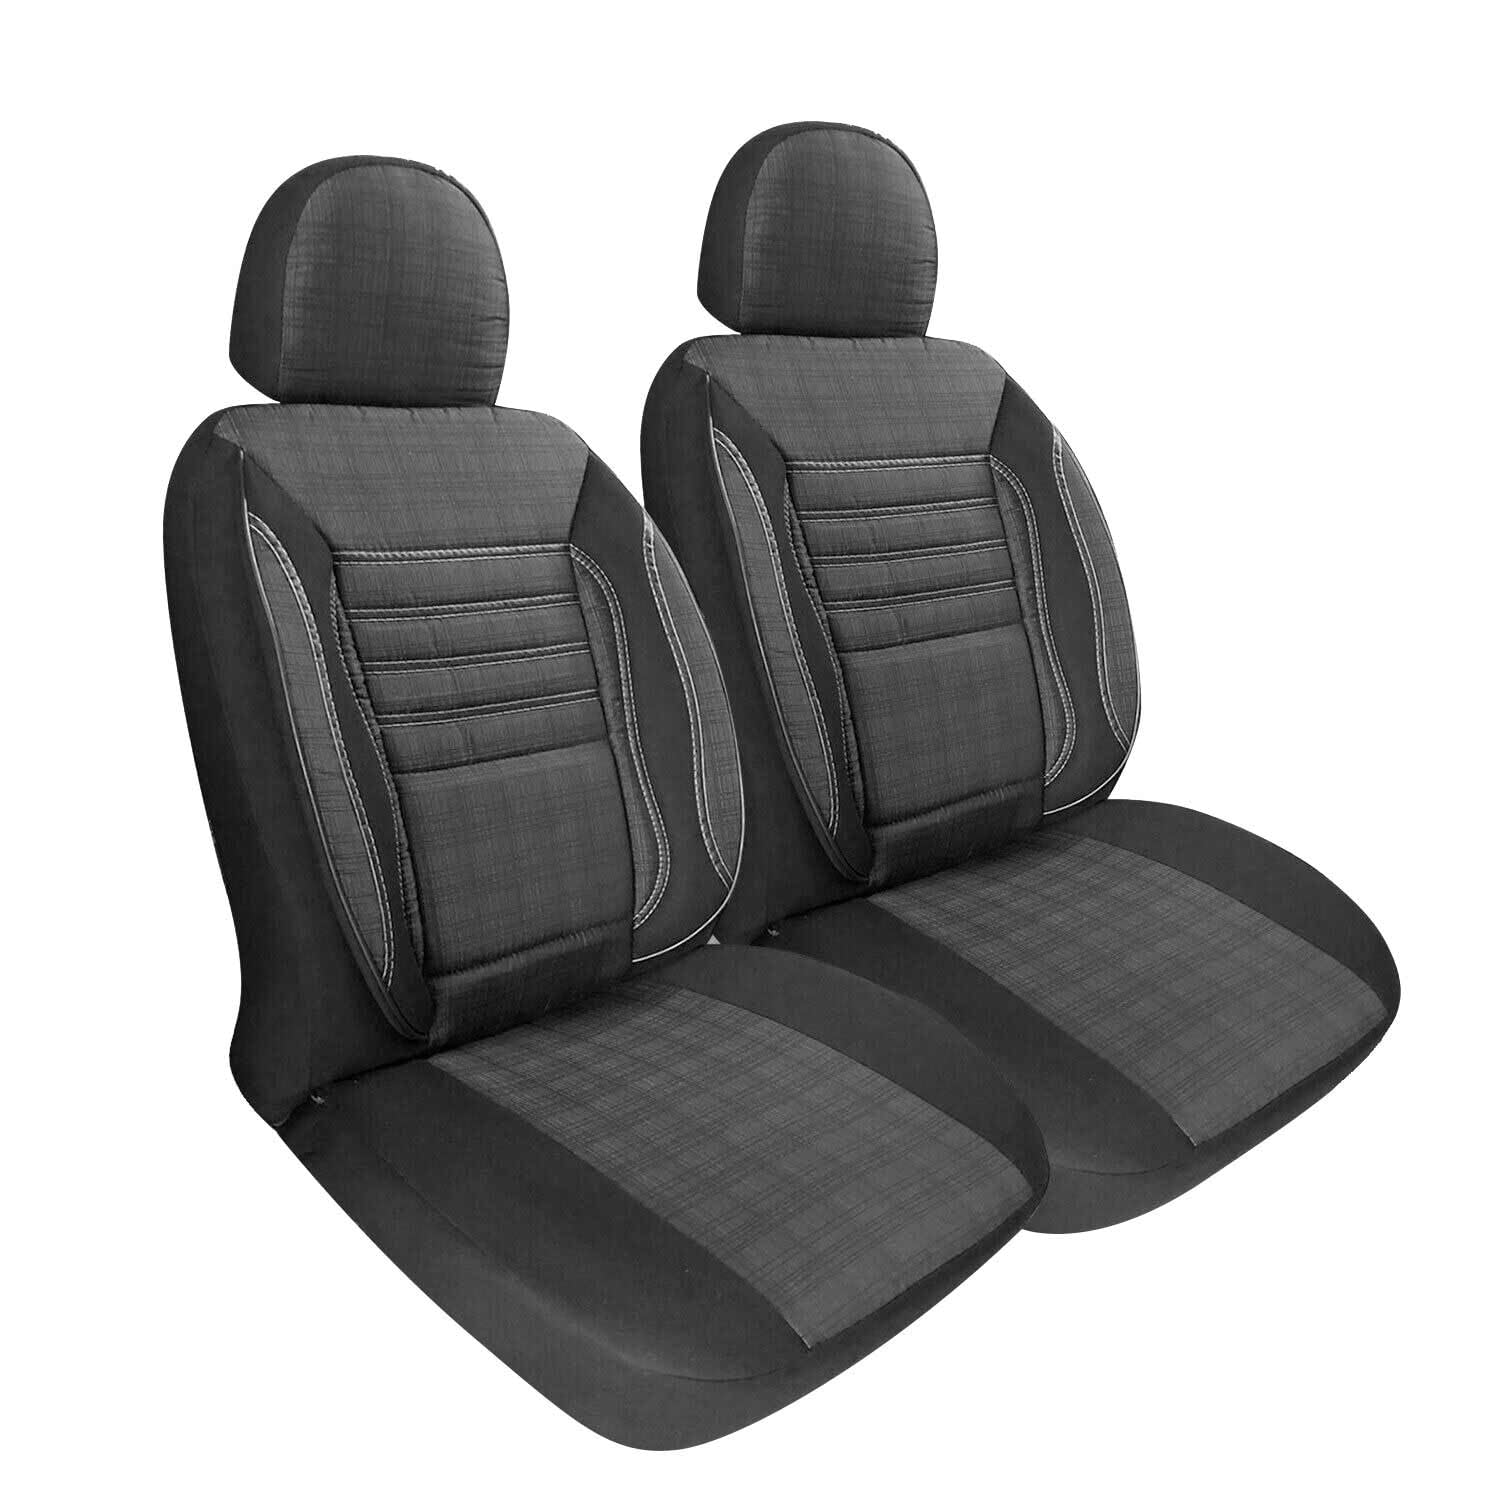 OMAC Schonbezüge Sitzbezüge kompatibel mit Mercedes Sprinter 906 Rauch Grau 2 Sitz Vorne Satz von OMAC